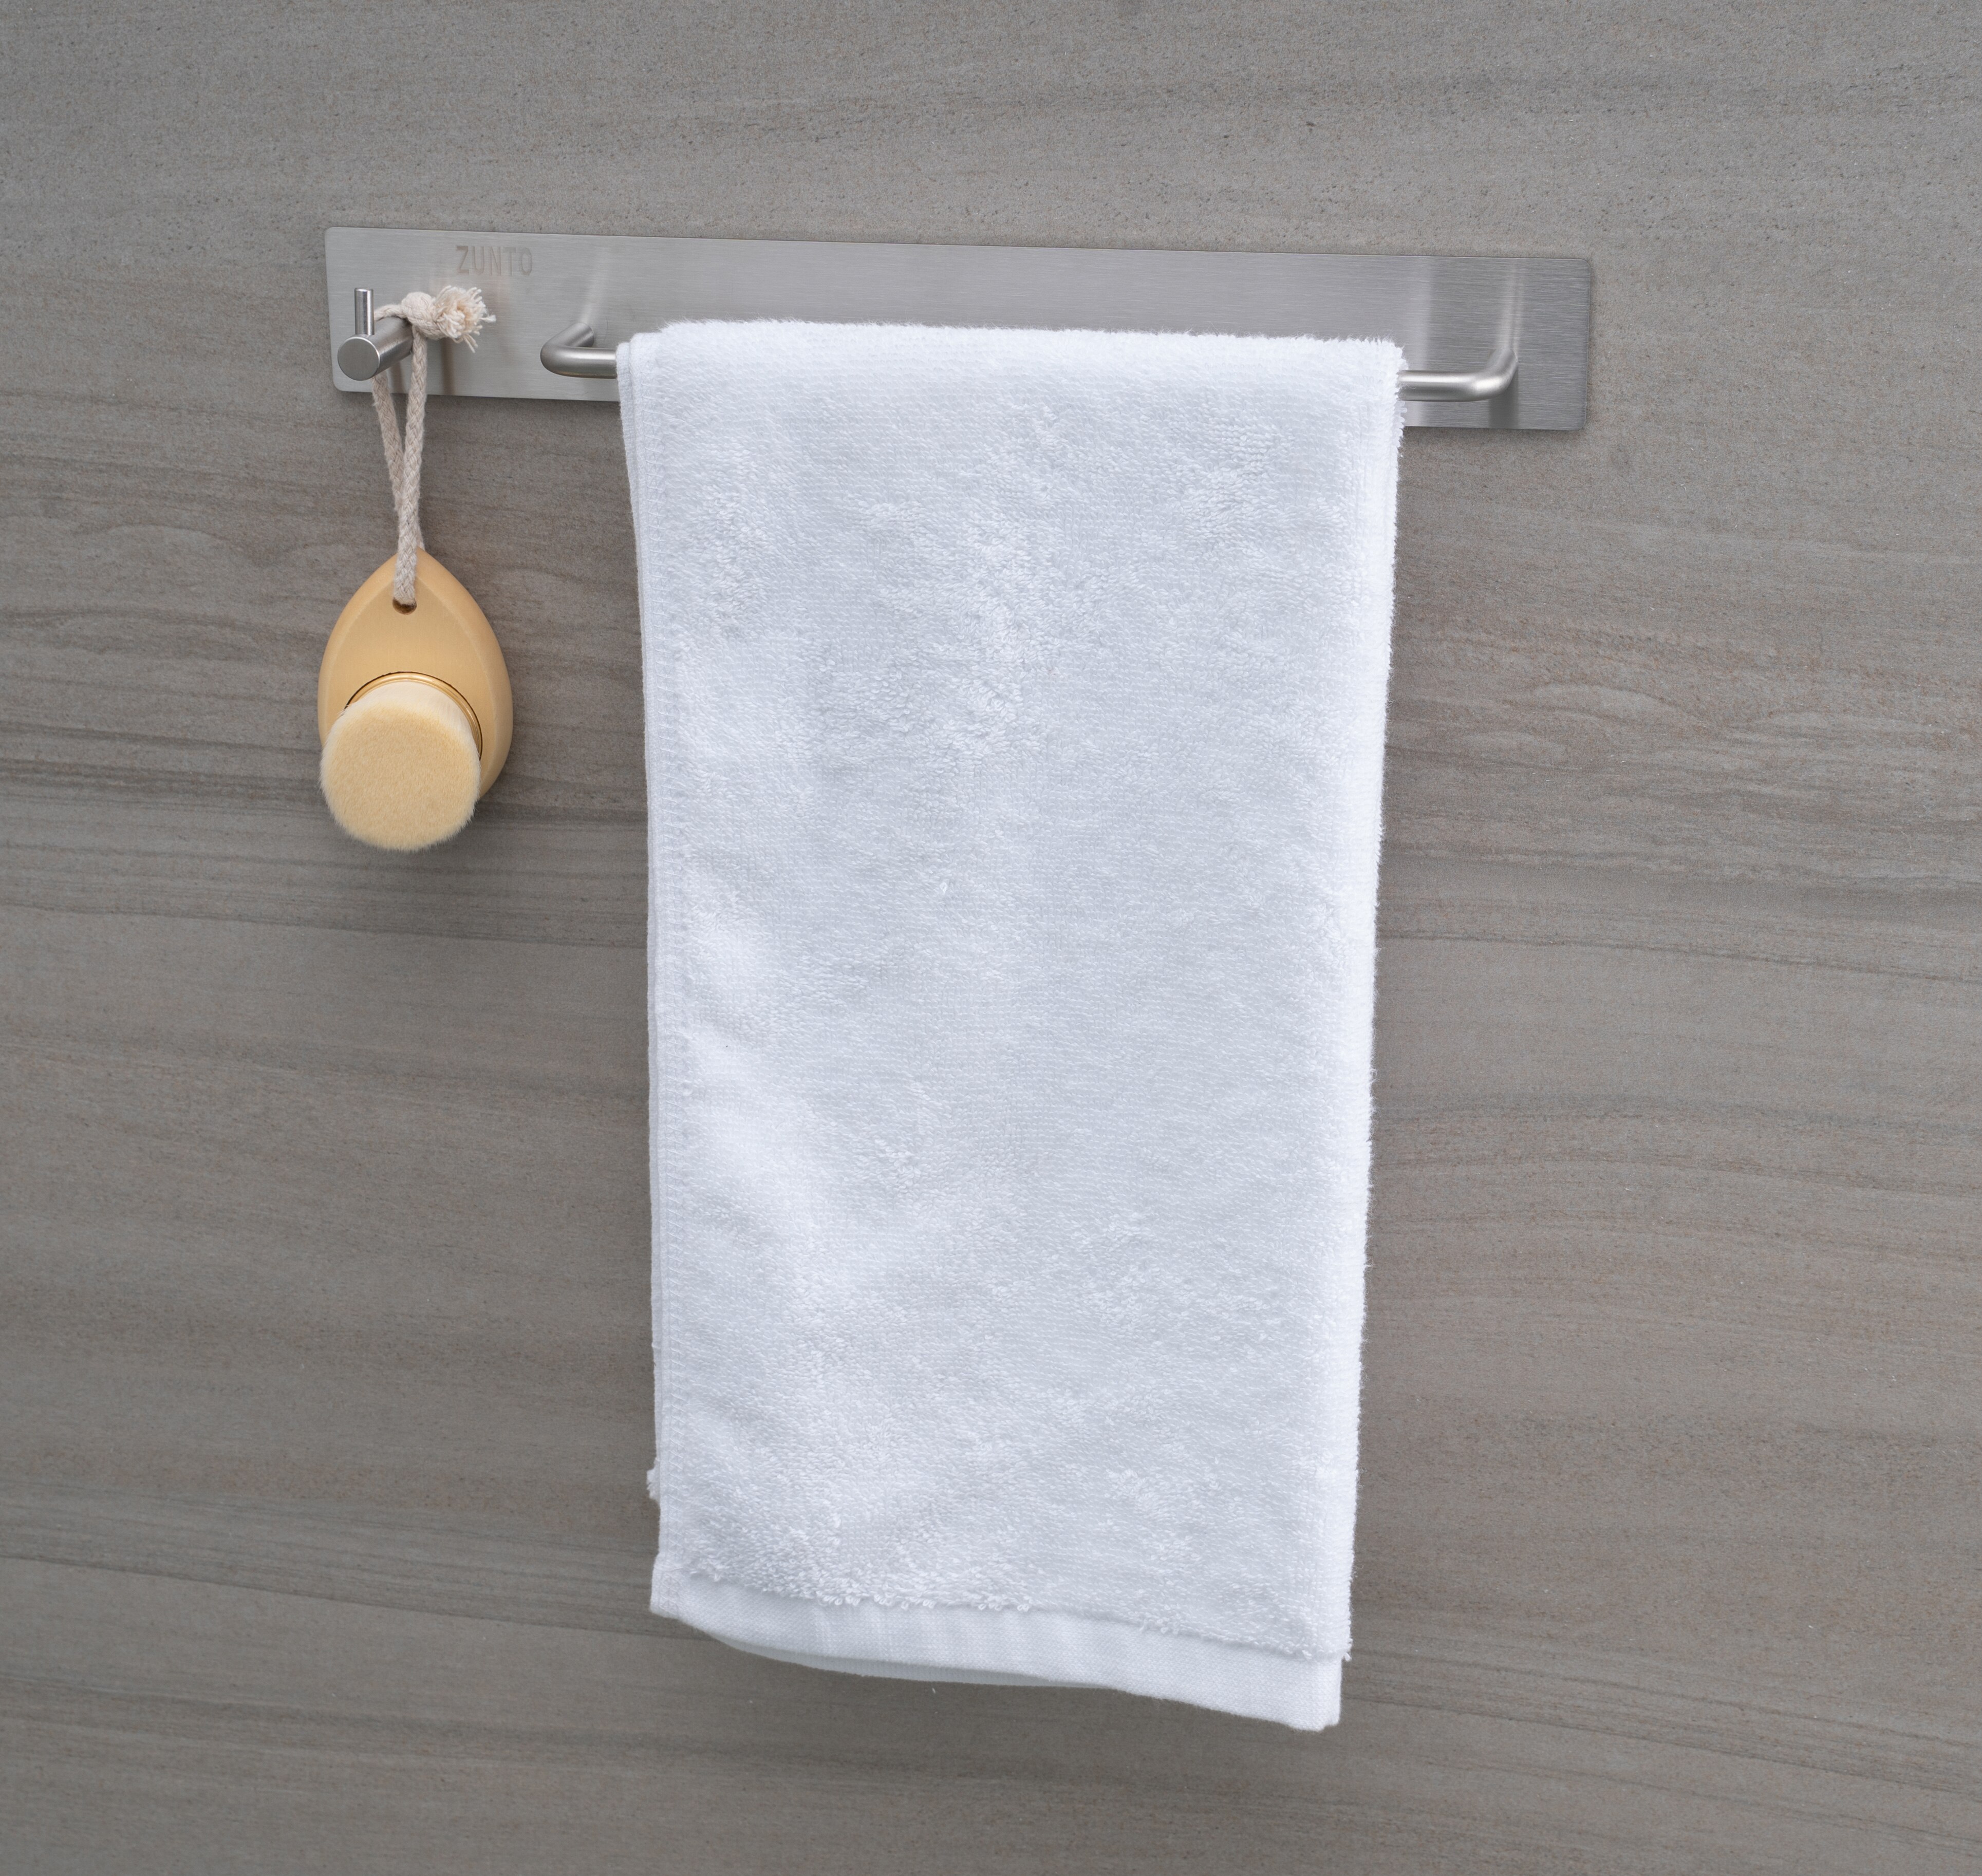 ZUNTO Handdoek Houder 304 Rvs Handdoek Hanger Zelfklevende Handdoek In de Badkamer Keuken Voor Handdoekhouders